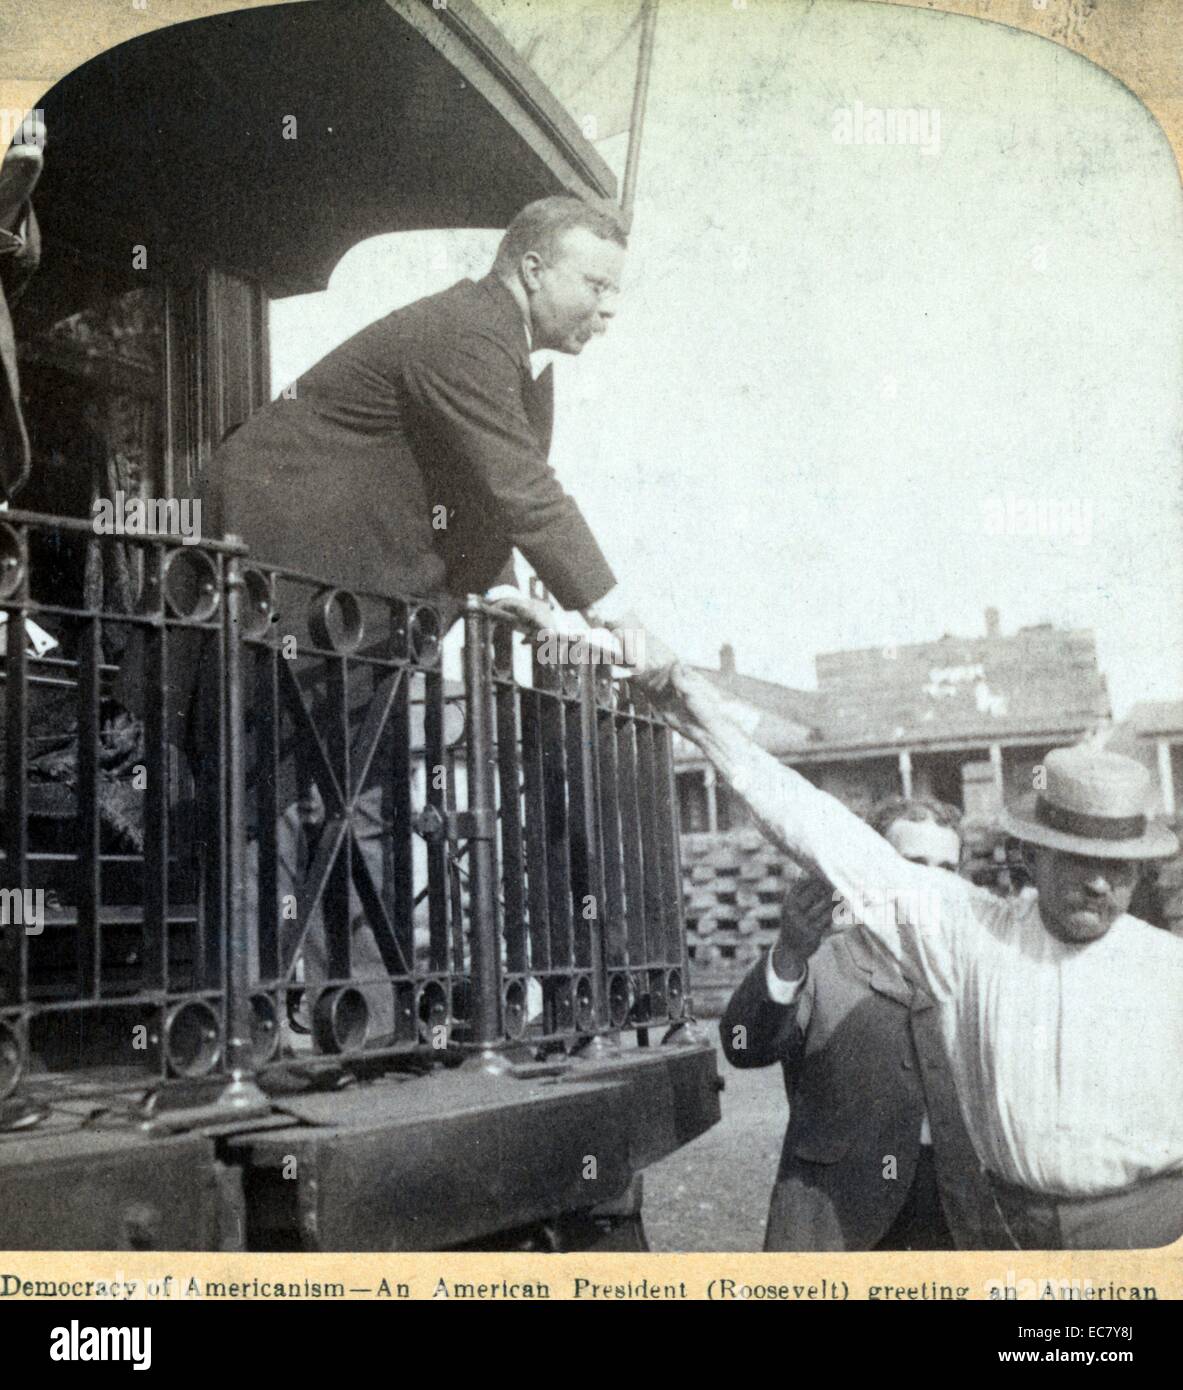 Stéréogramme montrant Roosevelt agitant la main d'un homme à partir d'un train." La démocratie de l'américanisme - un président américain (Roosevelt) Message d'un travailleur américain dans le Tennessee. Theodore Roosevelt (1858 - 1919) était un homme politique américain, auteur, naturaliste, explorateur et historien qui a été le 26e président des États-Unis. Banque D'Images